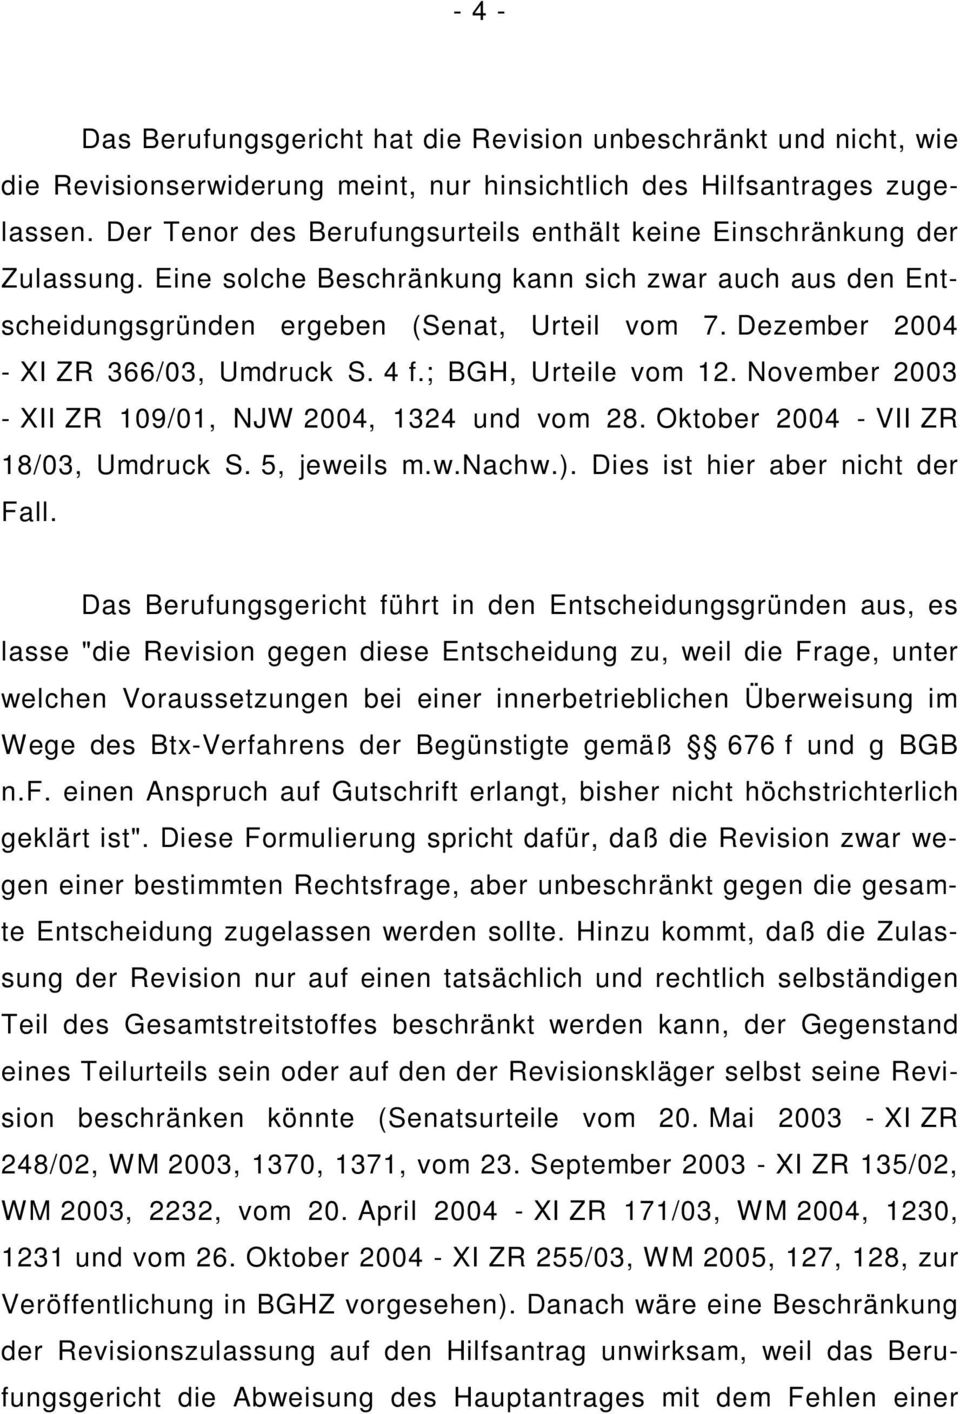 Dezember 2004 - XI ZR 366/03, Umdruck S. 4 f.; BGH, Urteile vom 12. November 2003 - XII ZR 109/01, NJW 2004, 1324 und vom 28. Oktober 2004 - VII ZR 18/03, Umdruck S. 5, jeweils m.w.nachw.).